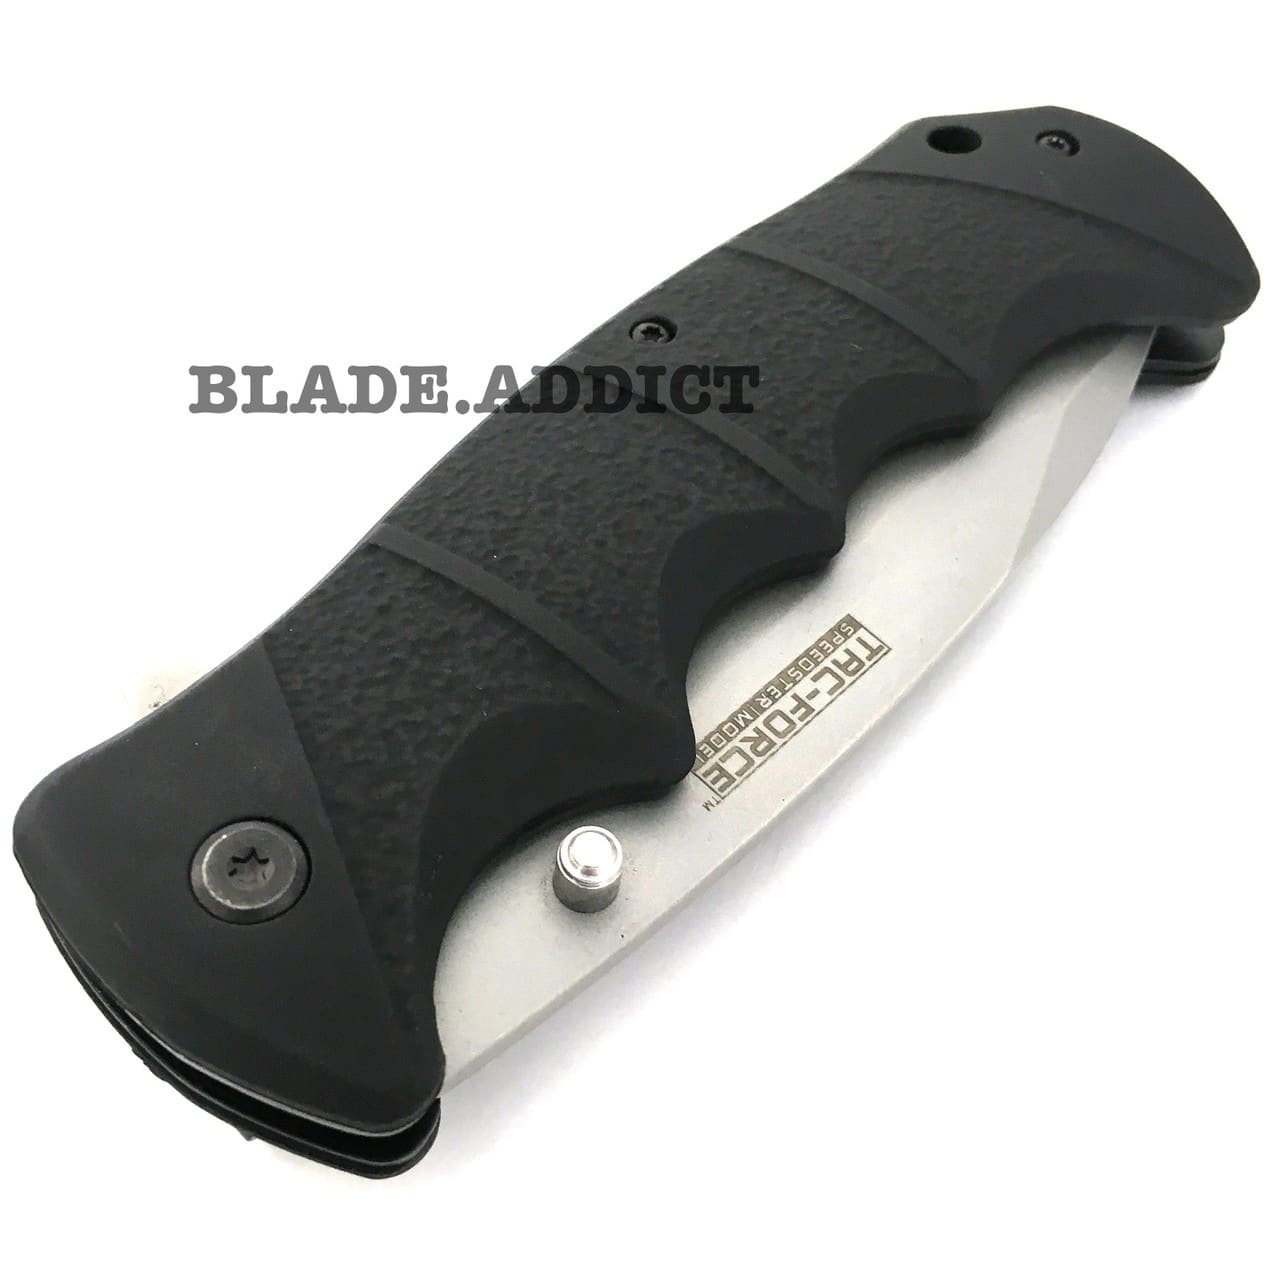 9" TAC-FORCE BLACK Spring Assisted Open TACTICAL Folding Pocket Knife NEW